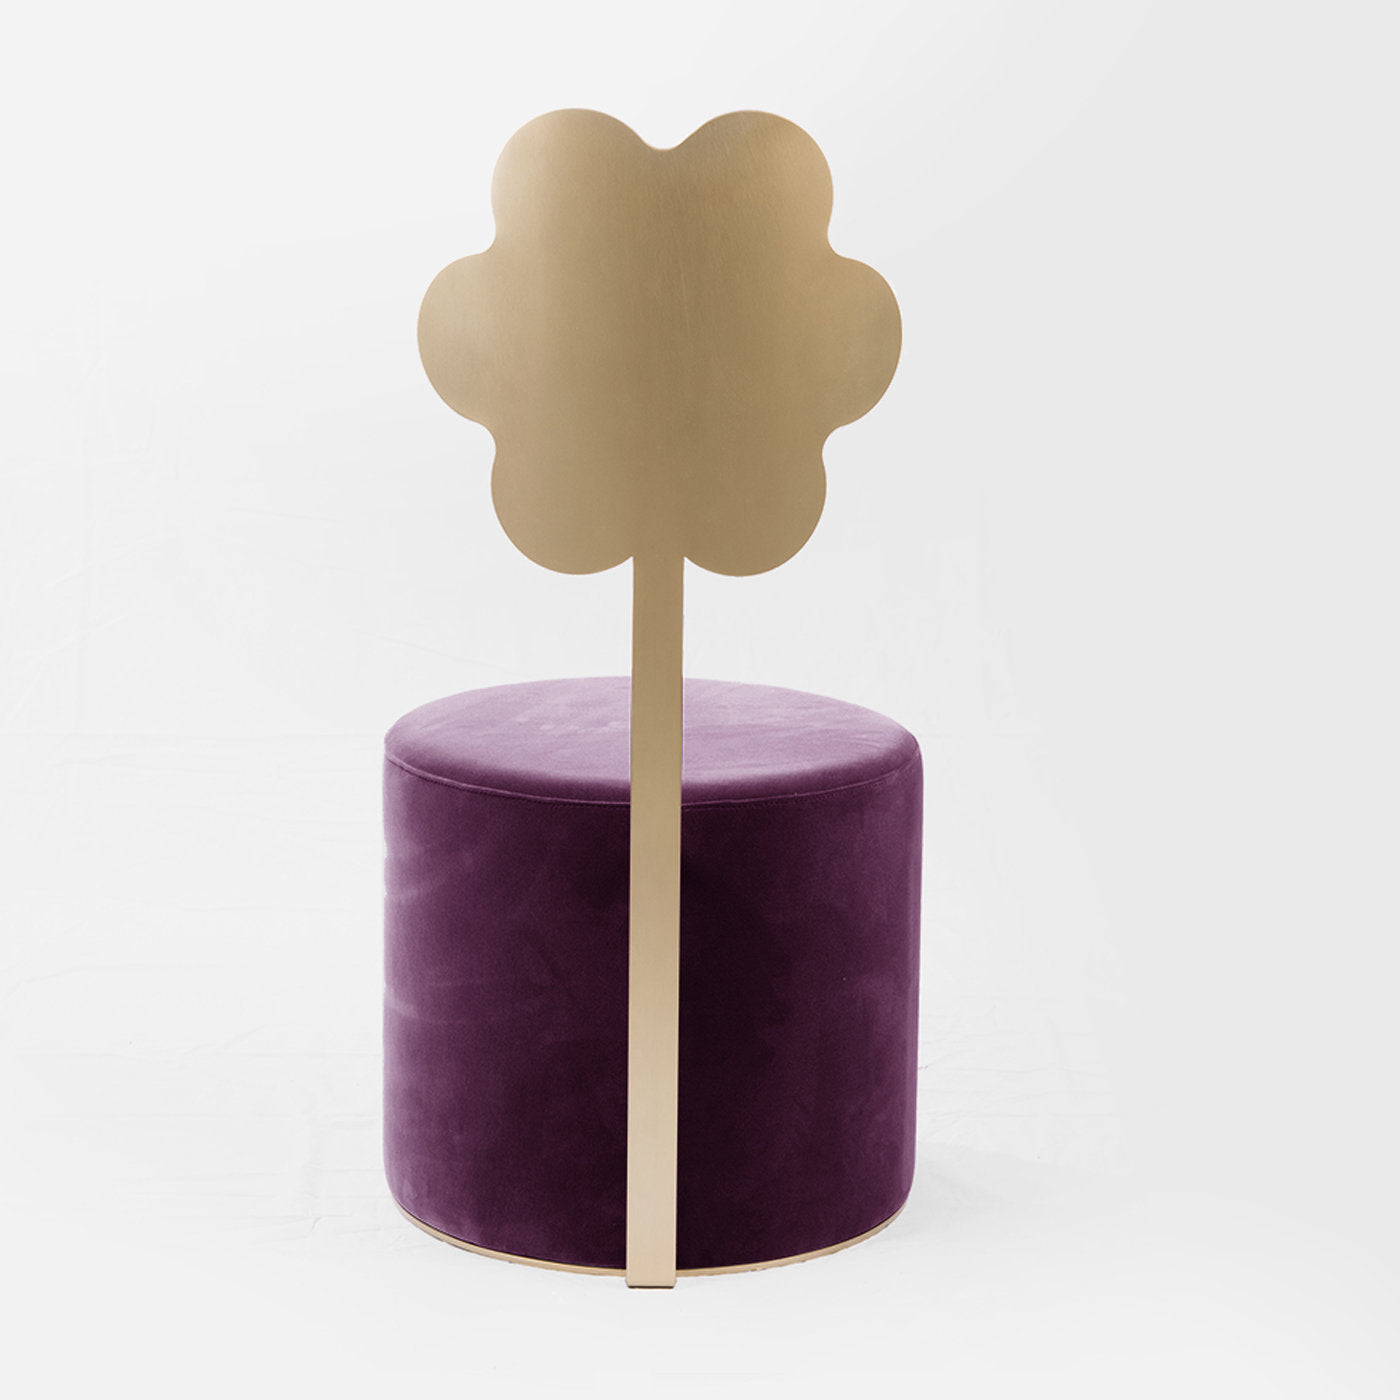 Daisy Purple Pouf by Artefatto Design Studio - Alternative view 2